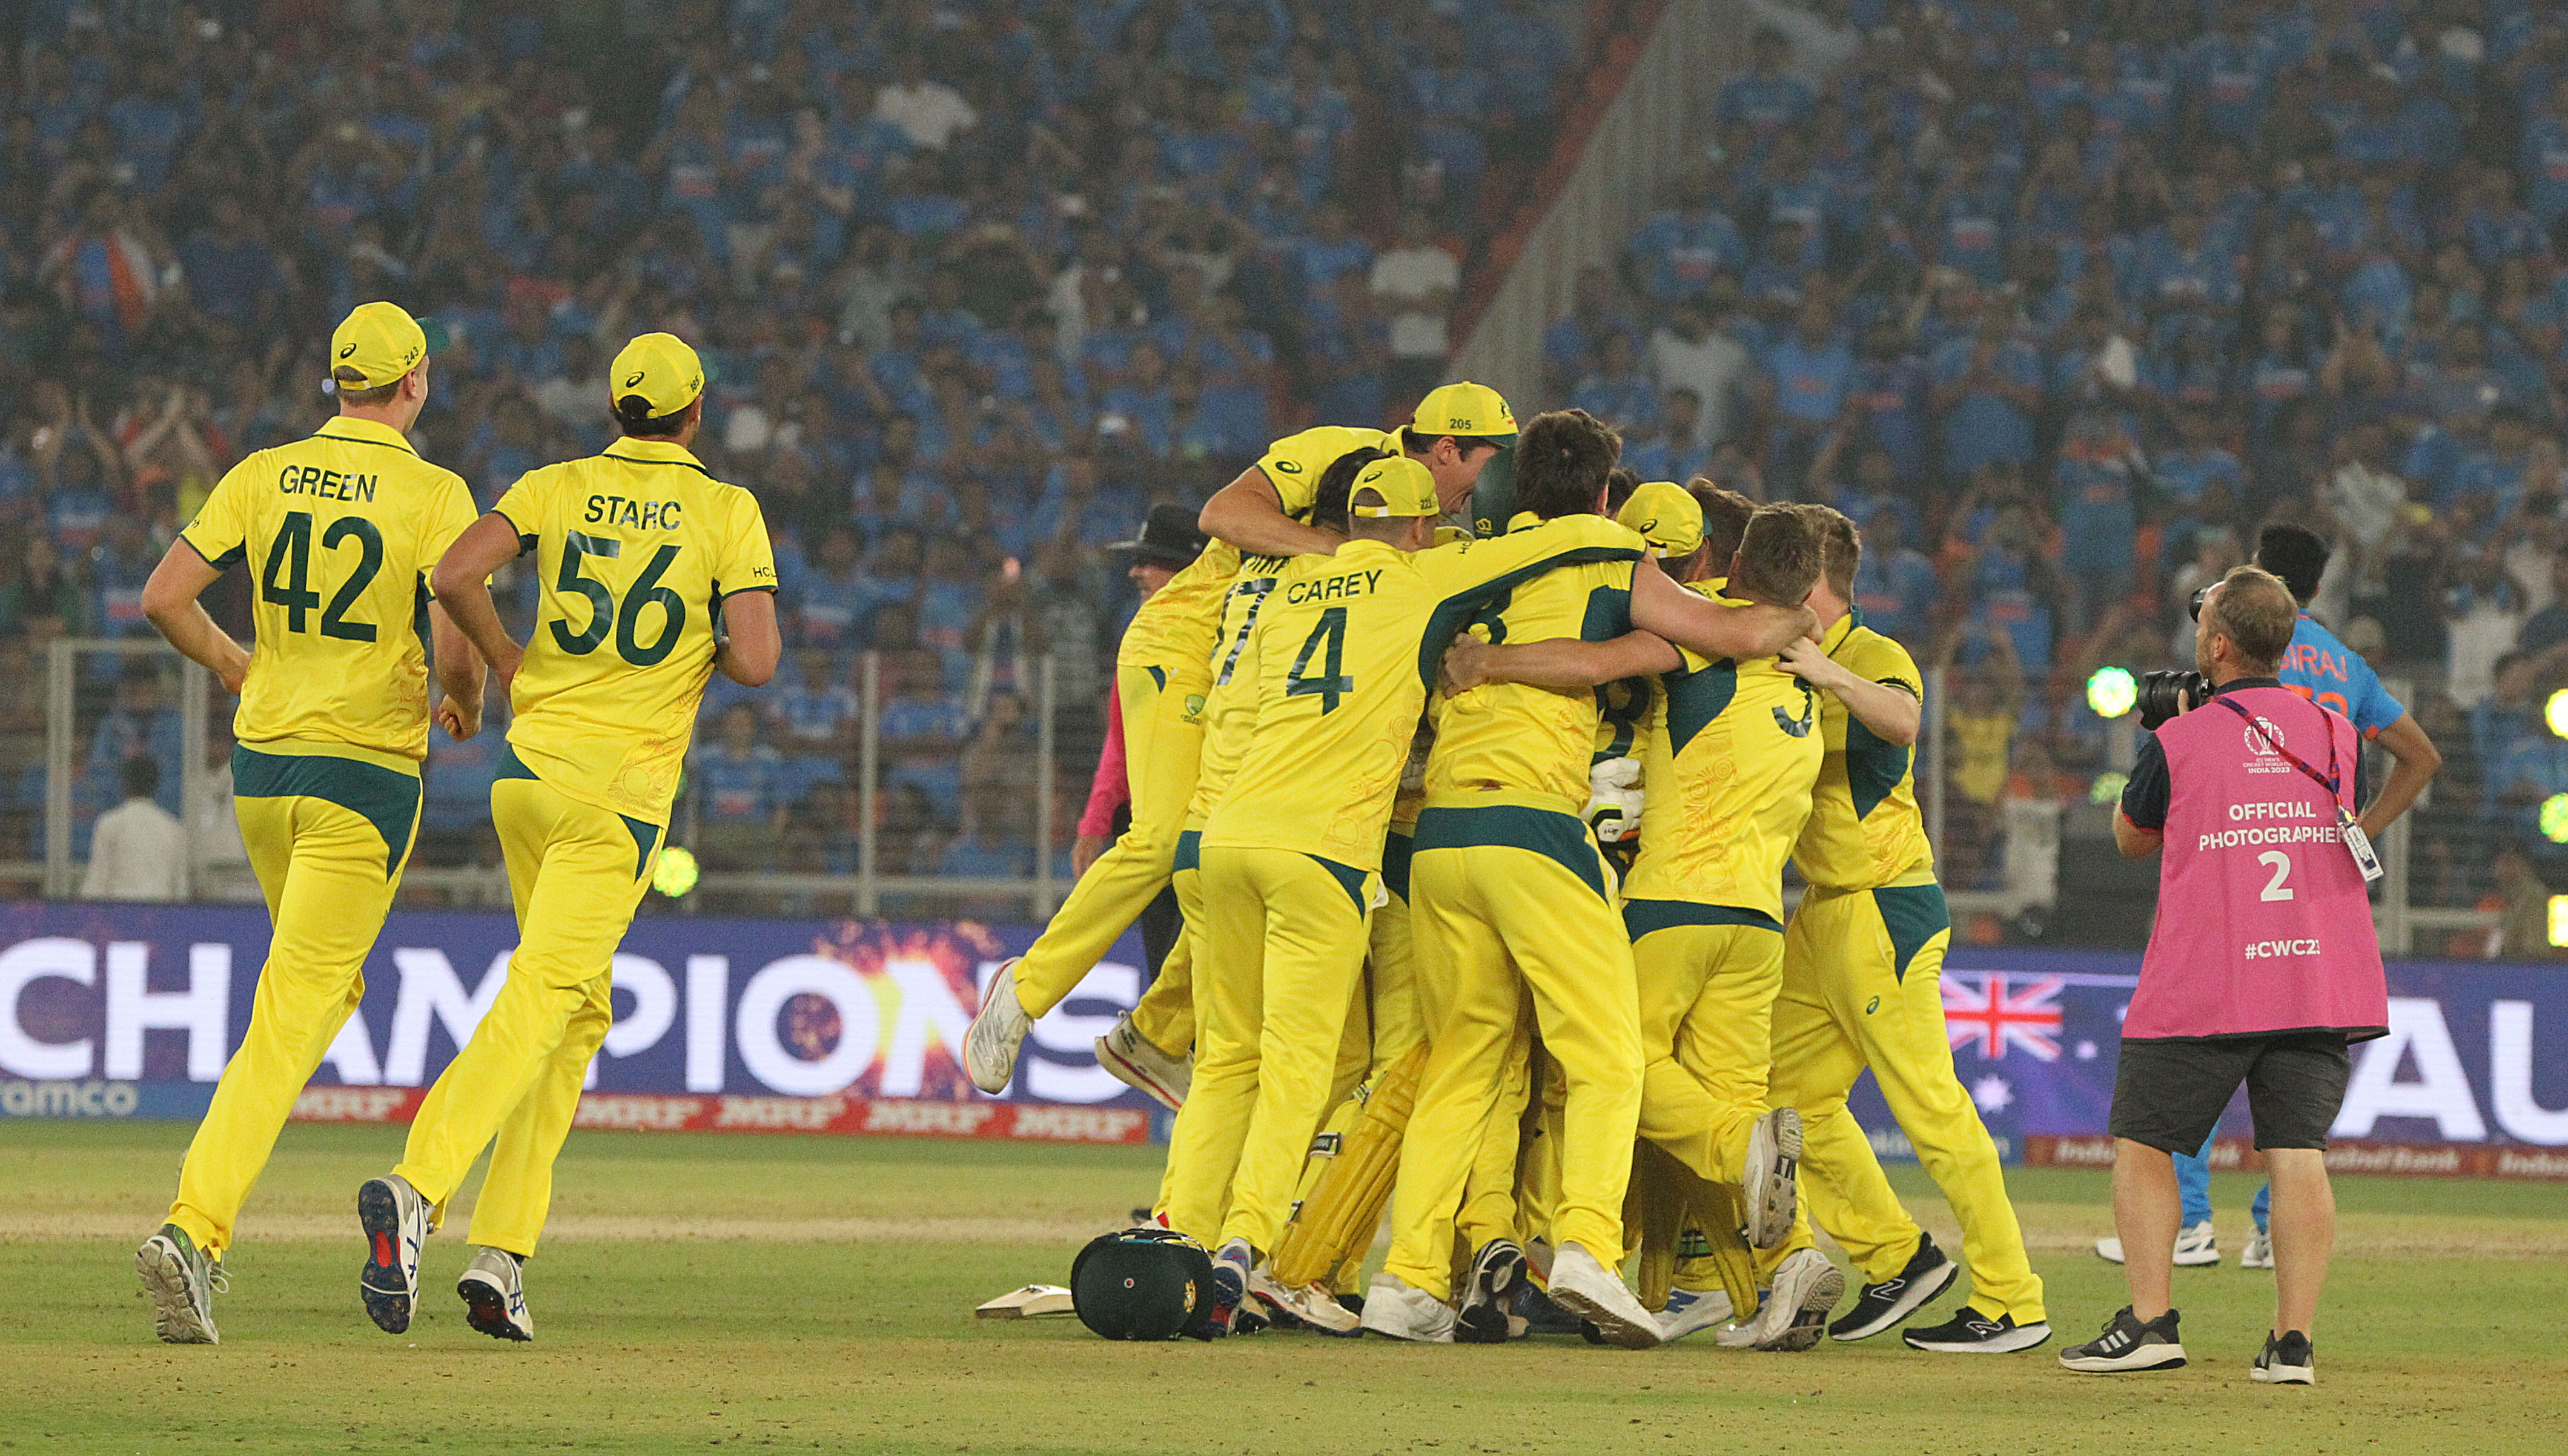 अहमदाबादमधील नरेंद्र मोदी स्टेडियमवर भारताविरुद्धच्या आयसीसी पुरुष क्रिकेट विश्वचषक अंतिम सामन्यात विजय मिळवल्यानंतर ऑस्ट्रेलियन संघ आनंद साजरा करताना… (निर्मल हरिंद्रन : एक्सप्रेस फोटो)